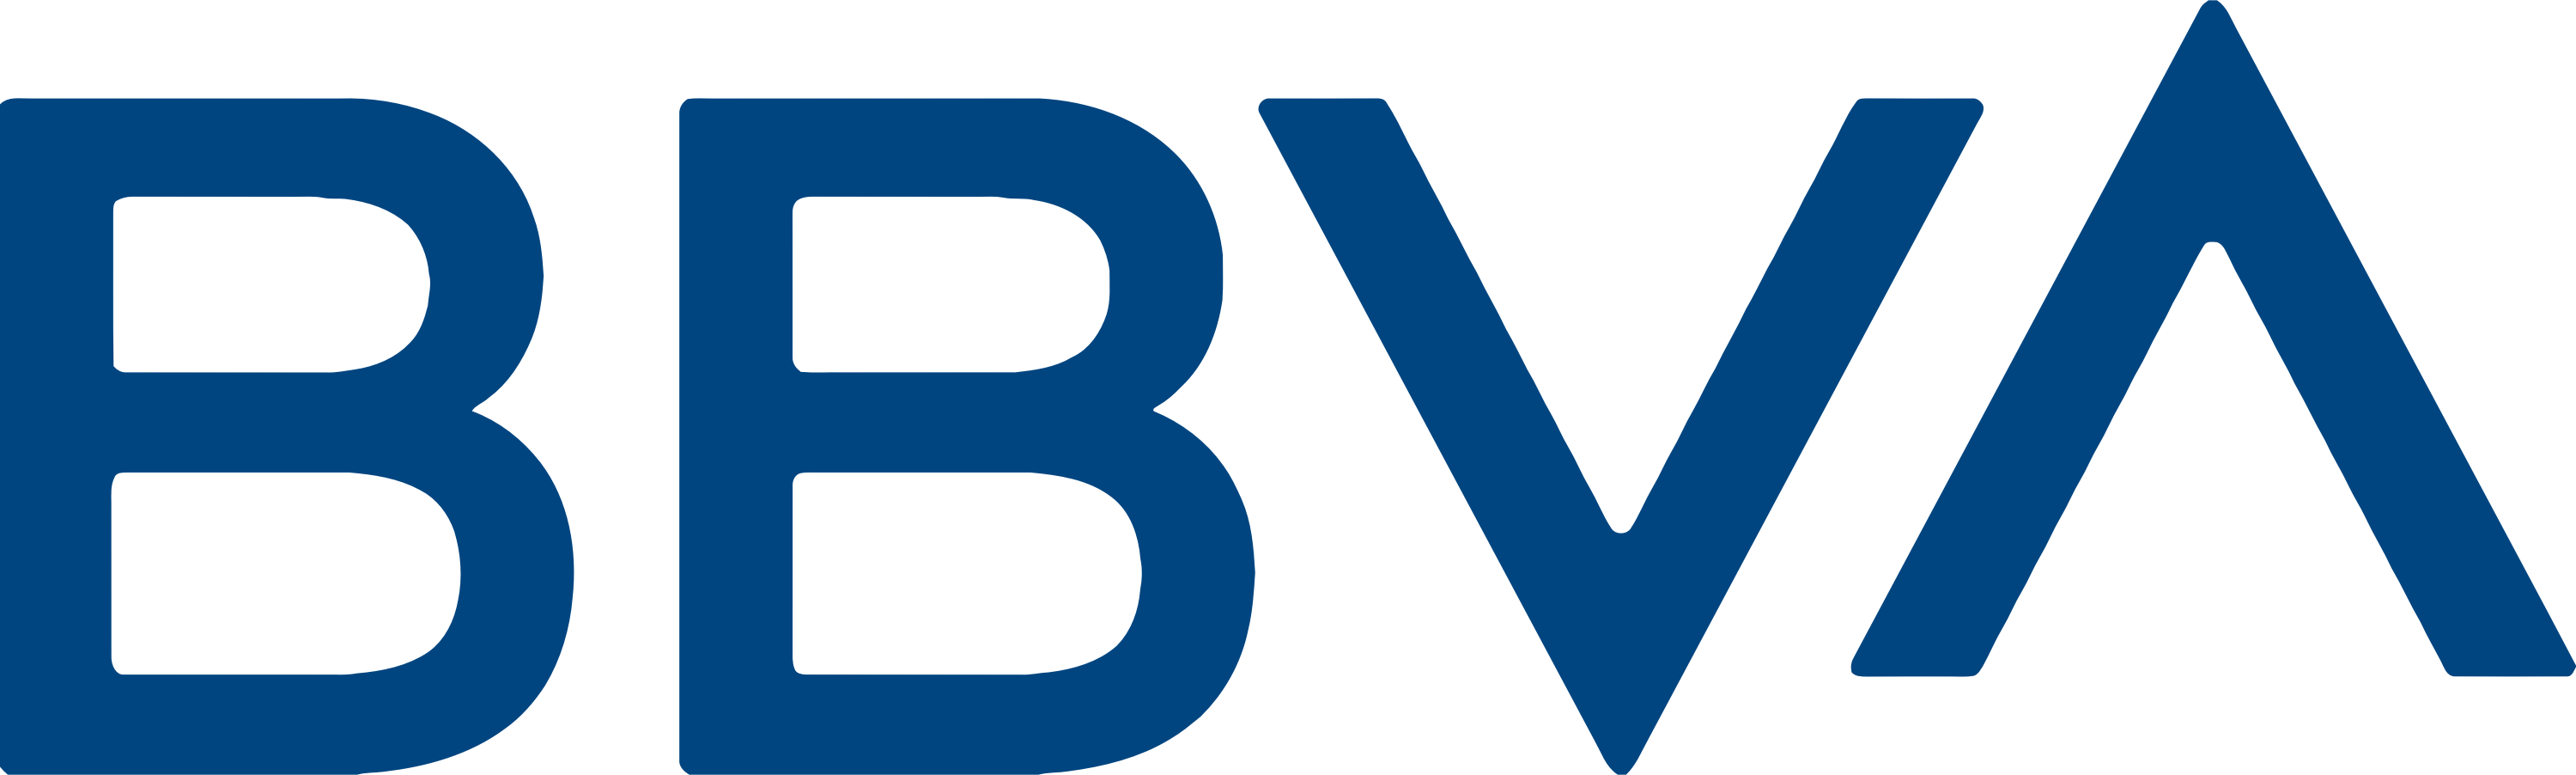 Logotipo da BBVA